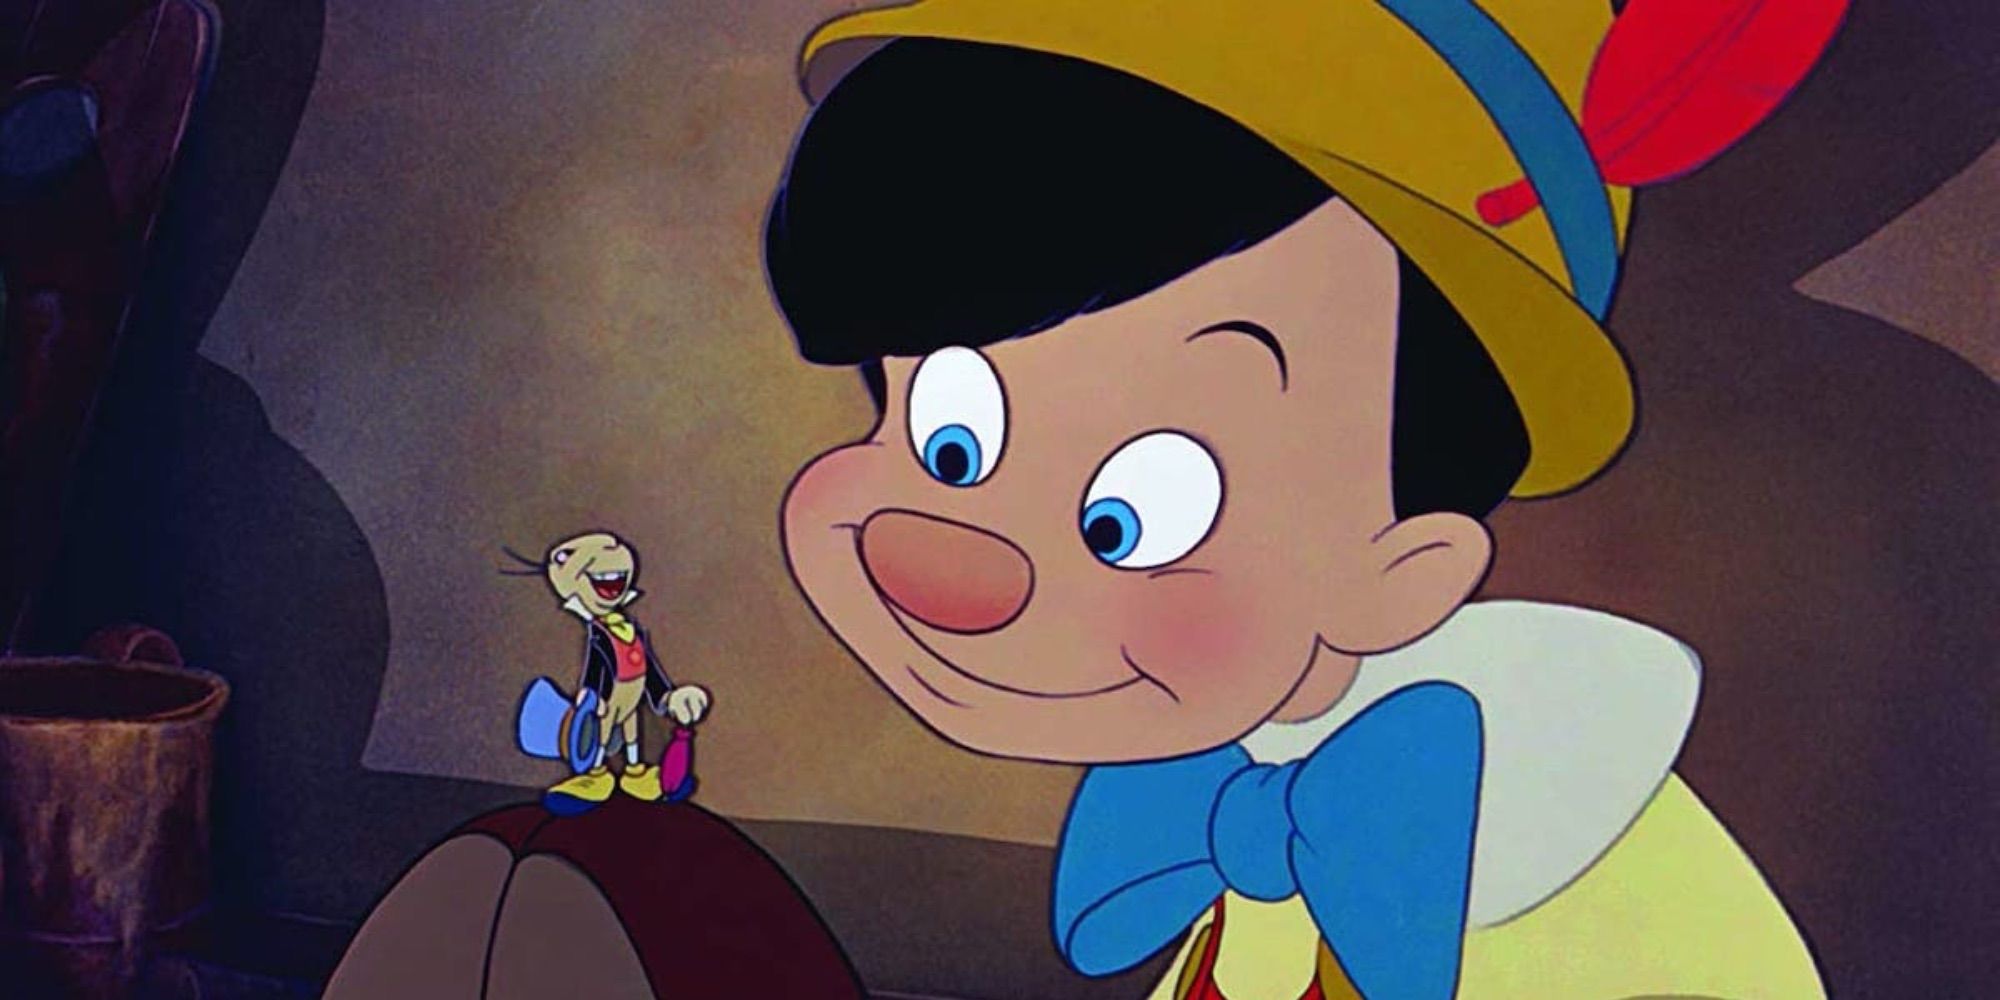 Pinocchio-2